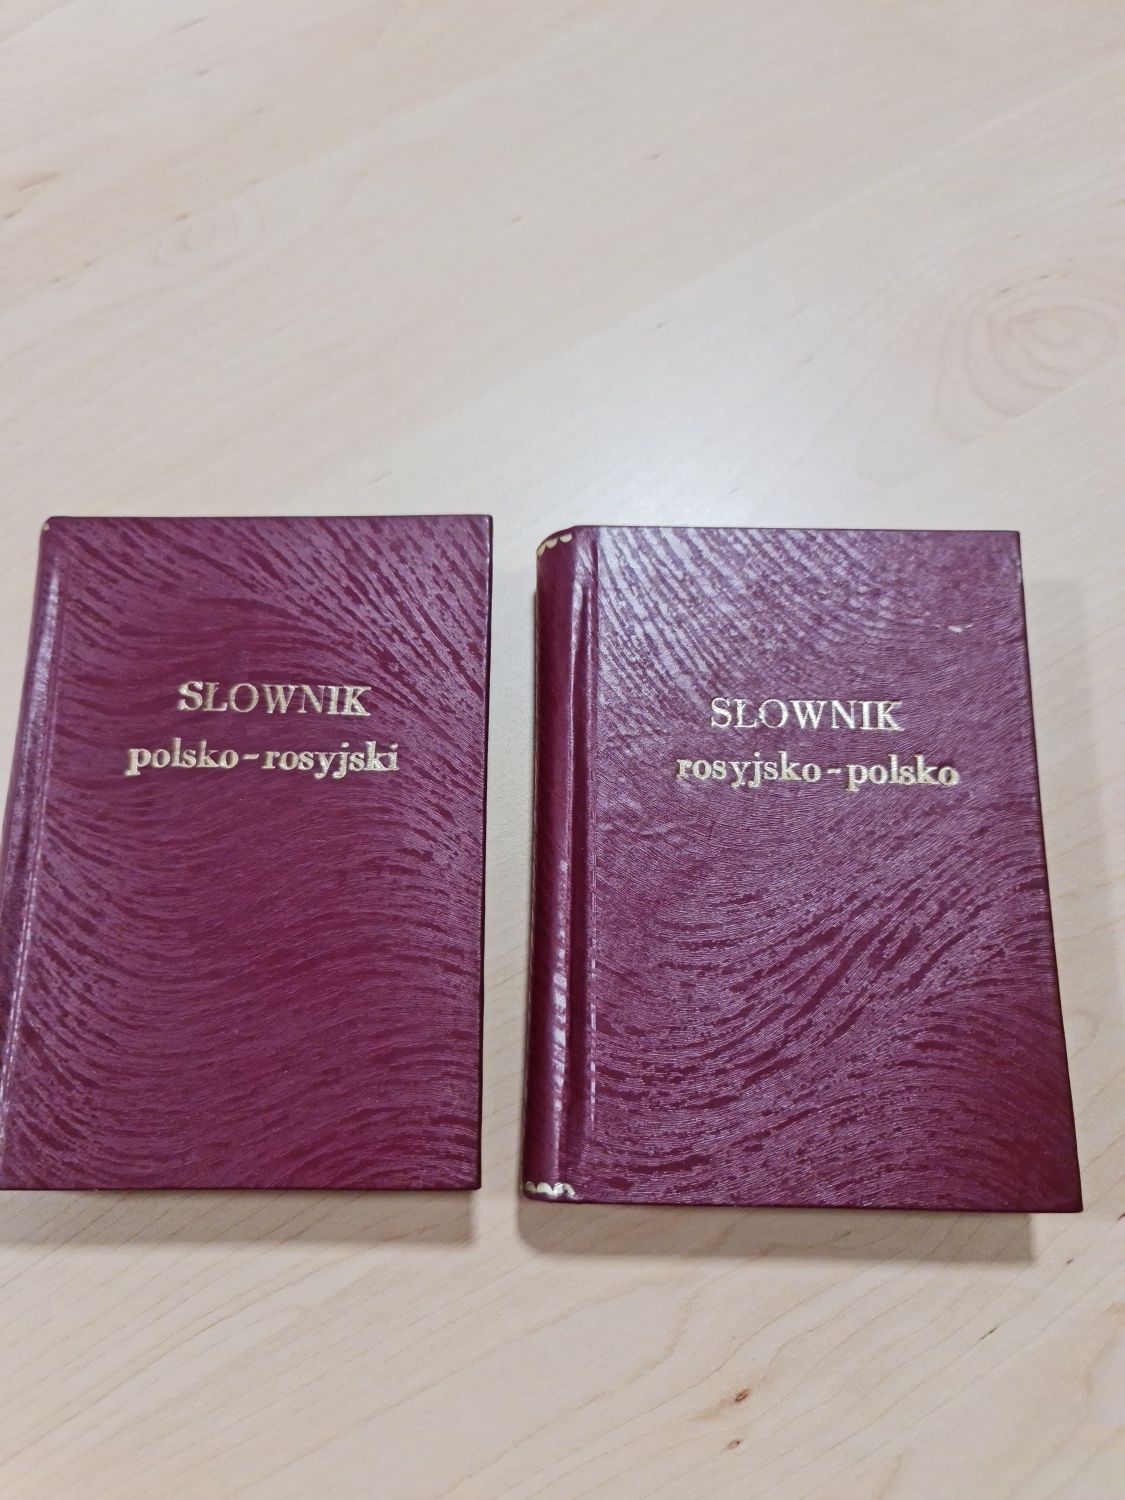 Słownik polsko-rosyjski-polski 2 tomiki